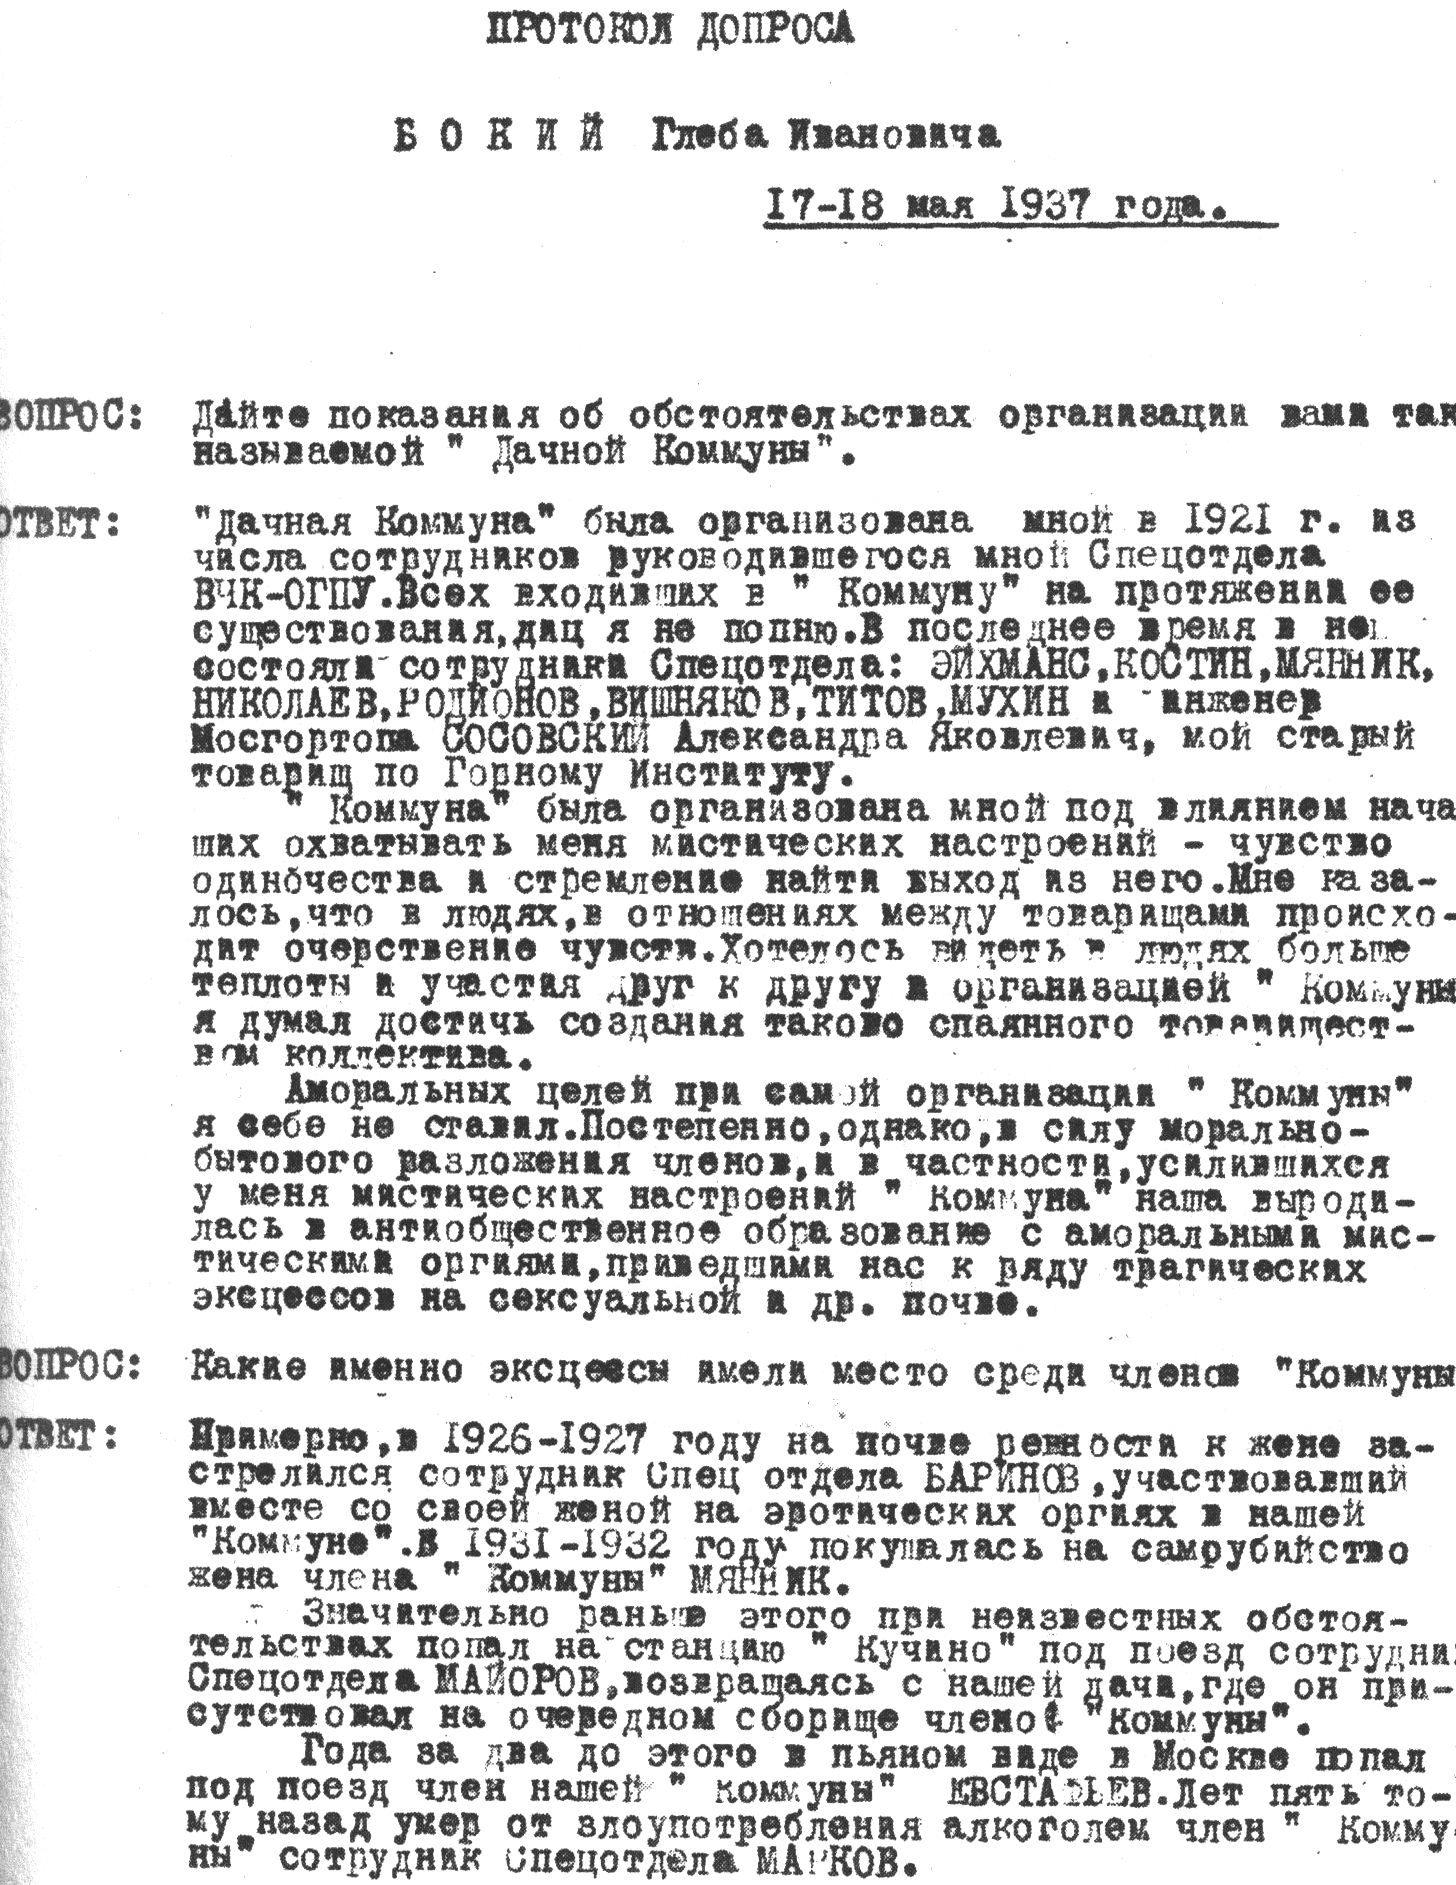 ЦА ФСБ, дело Бокия Г.И. Протокол допроса Бокия Г.И. от 17—18 мая 1937 года